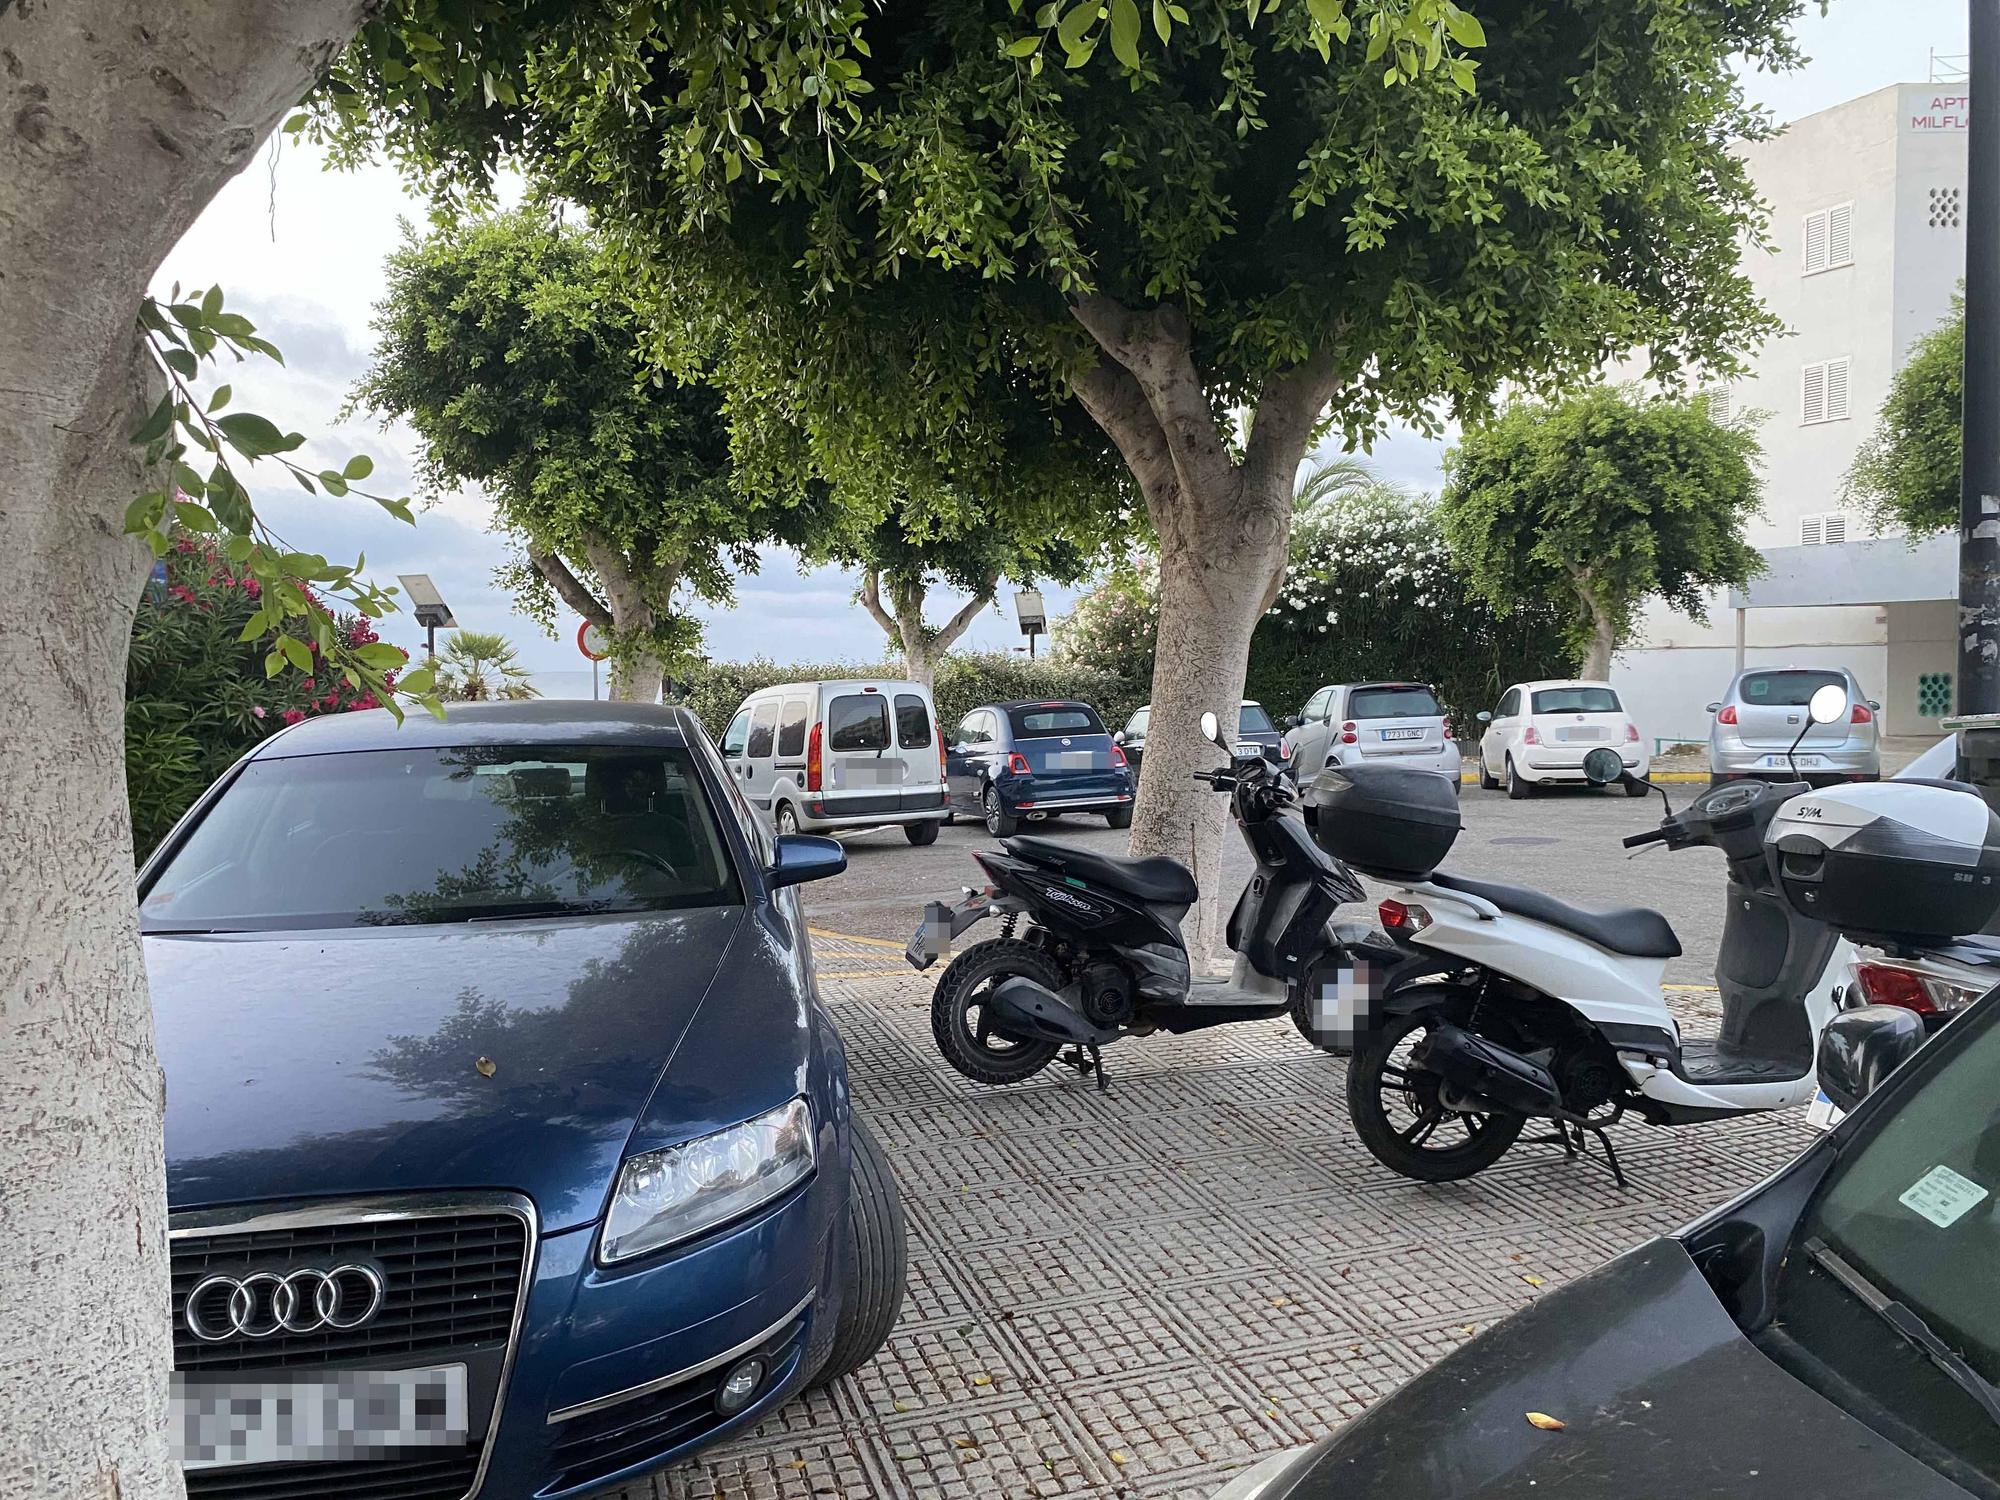 Galería: Suciedad y coches mal aparcados en las aceras en Platja d'en Bossa